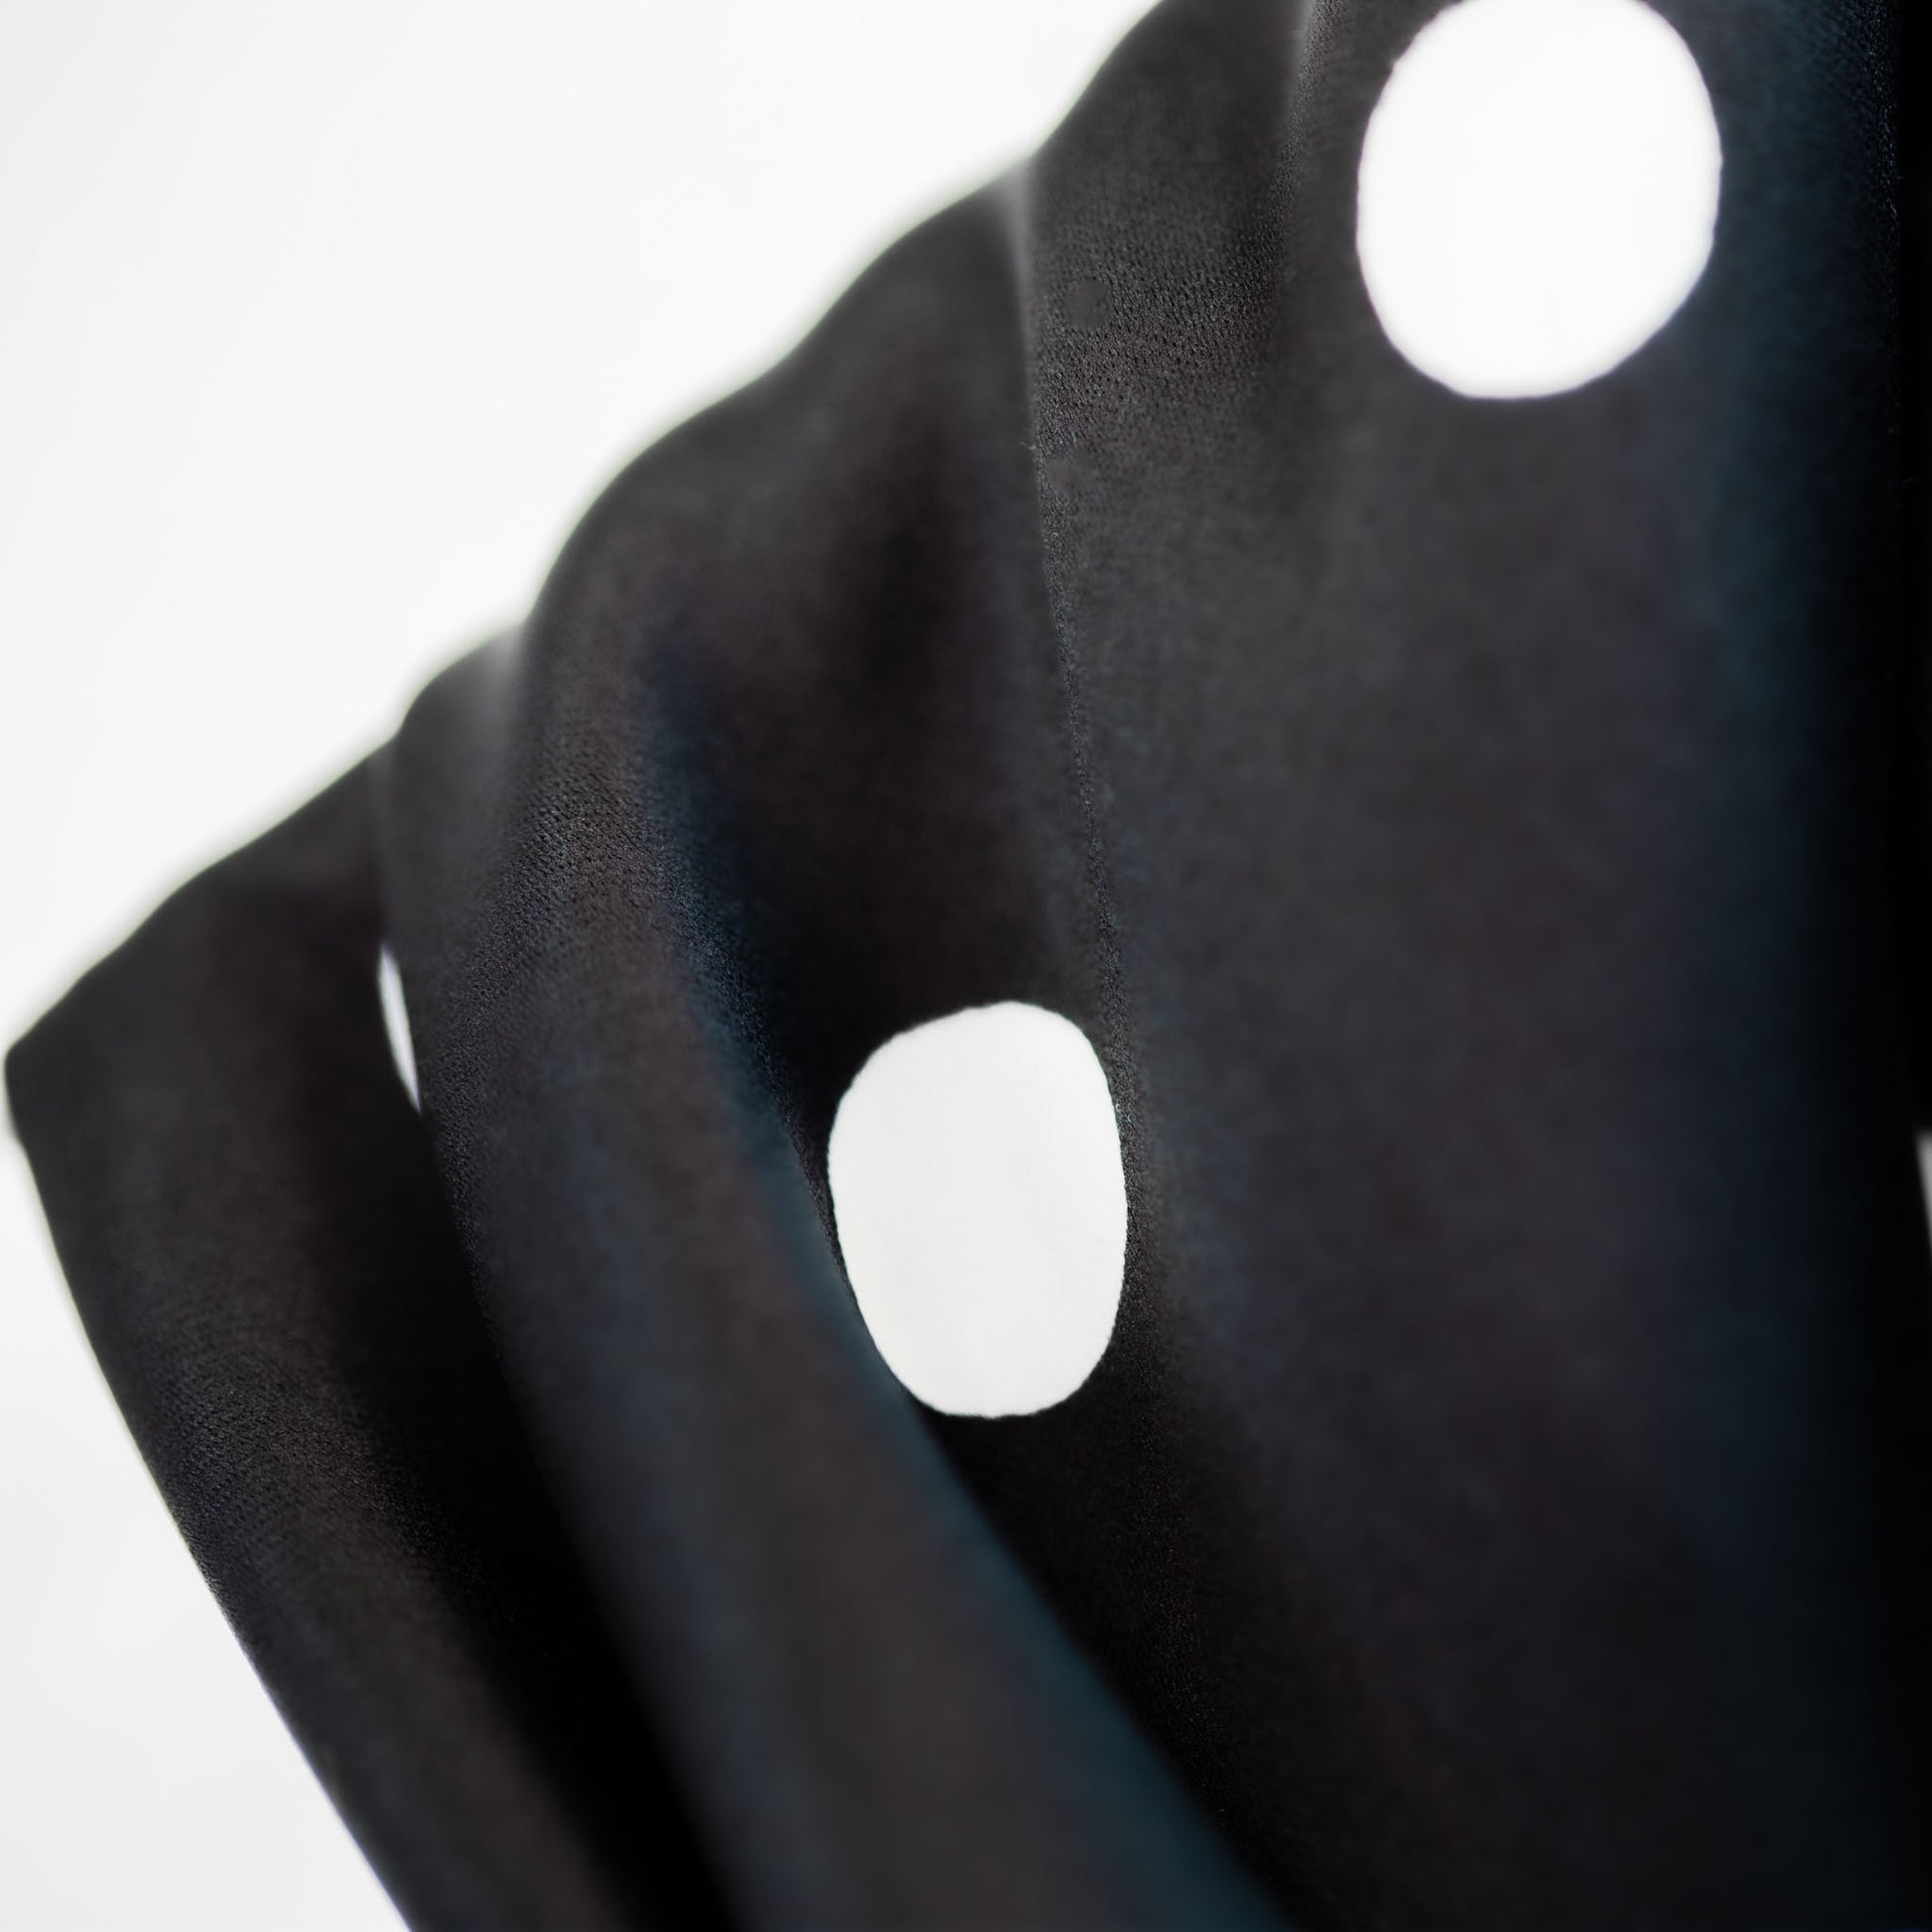 Eșarfă damă din satin, imprimeu cu buline mari, 70 x 70 cm - Negru, Alb